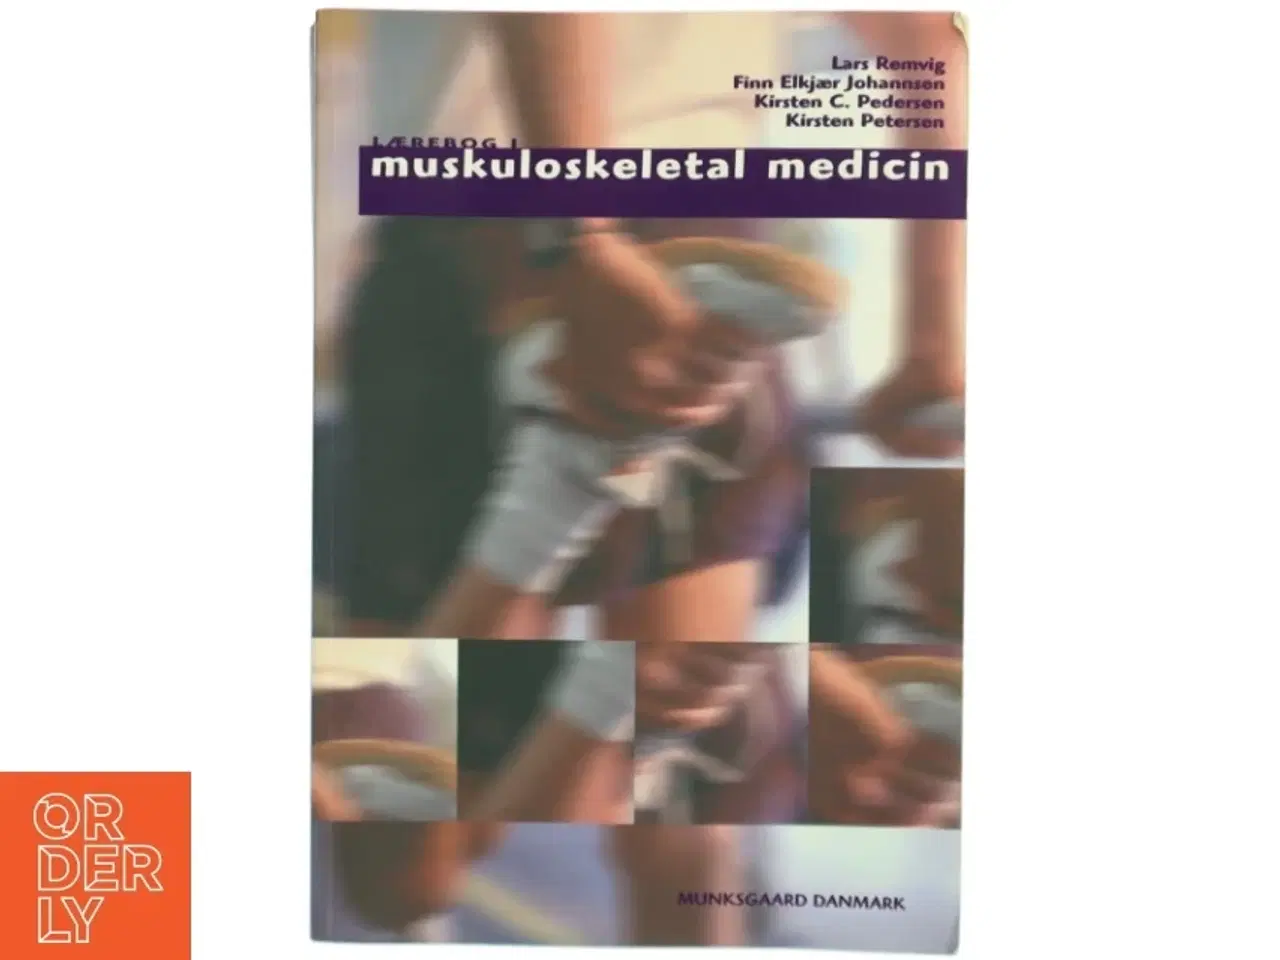 Billede 1 - Lærebog i muskuloskeletal medicin af Lars Remvig (Bog)